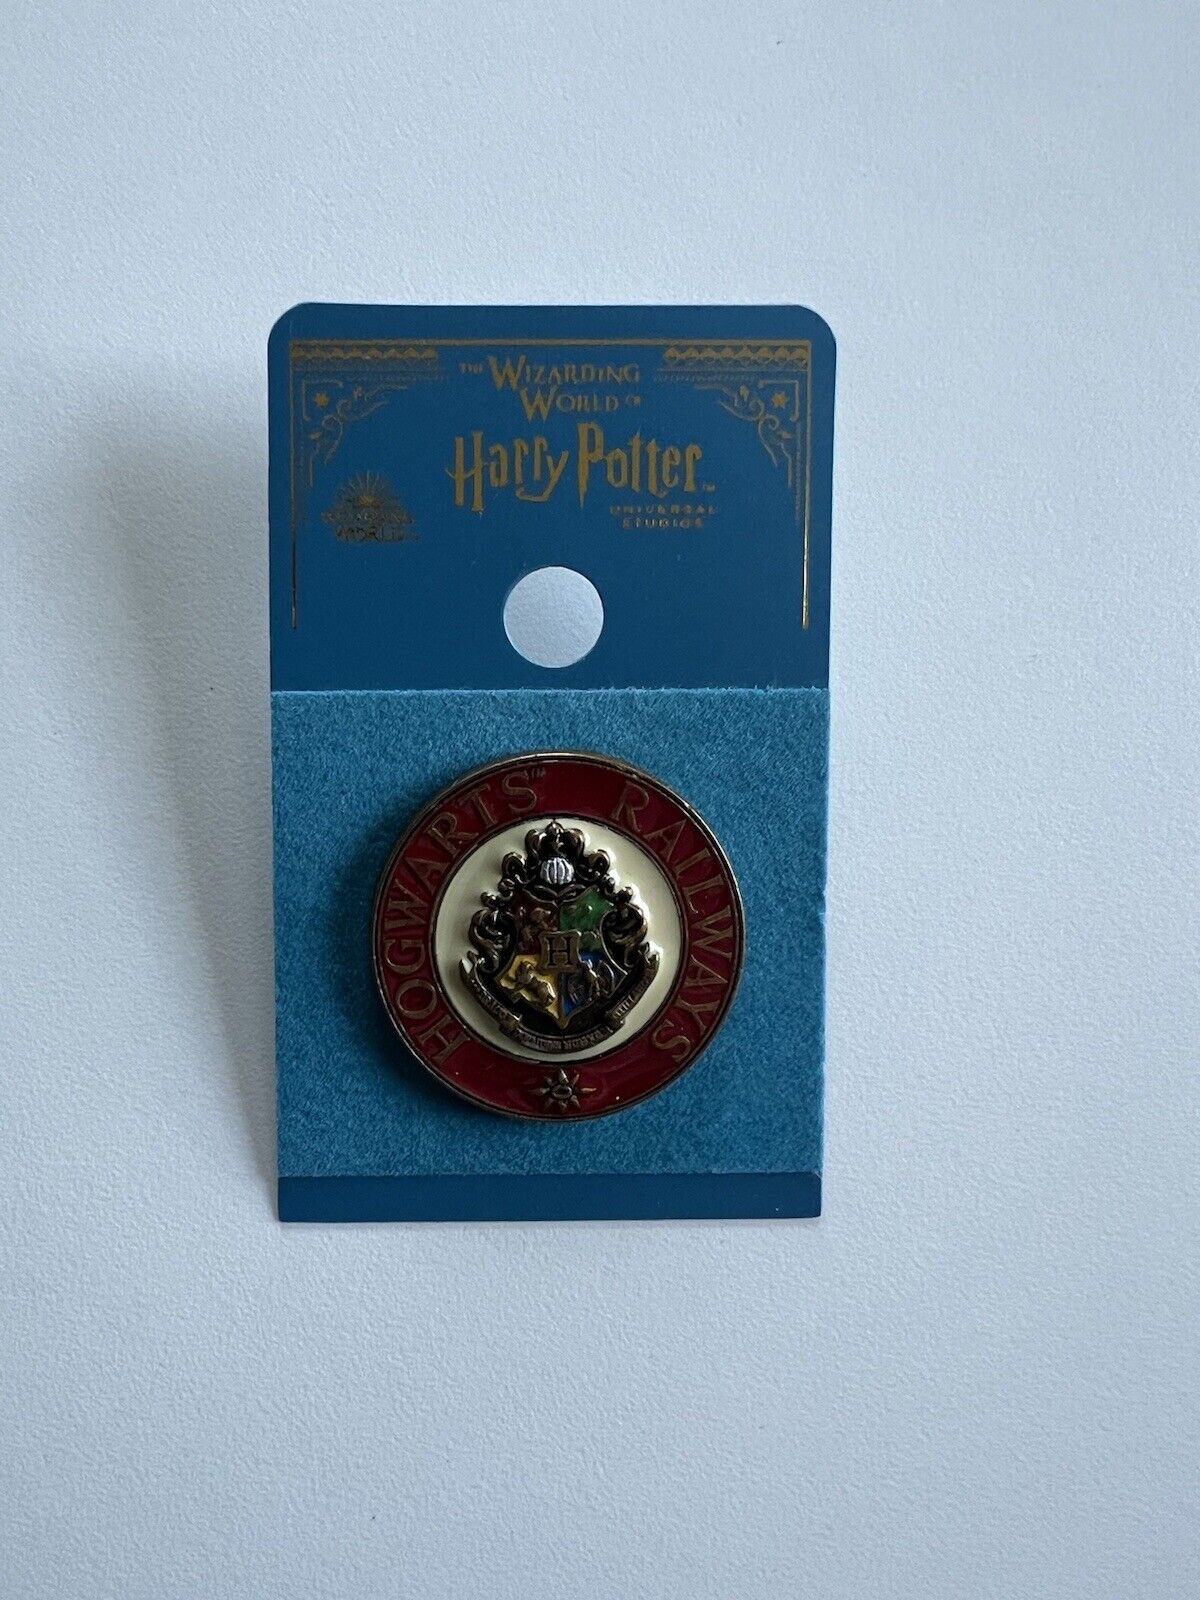 Harry Potter Official Hogwarts Railways Pin London Studio Tour Authentic